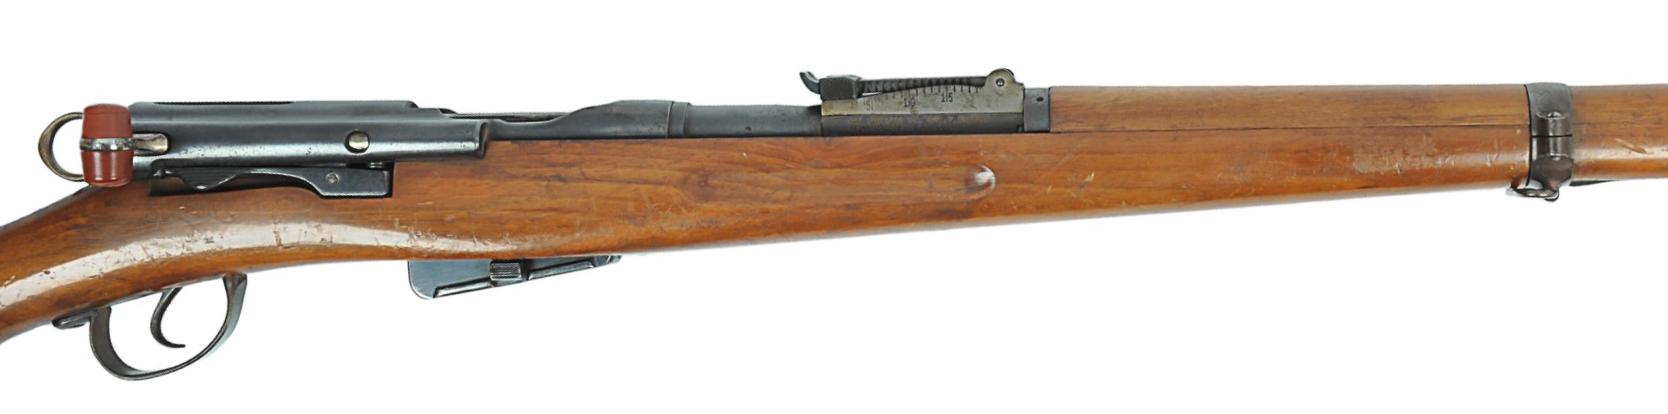 Swiss Military M1911 7.5x55mm Schmidt-Rubin Straight-Pull Rifle - FFL # P6873 (K1S1)